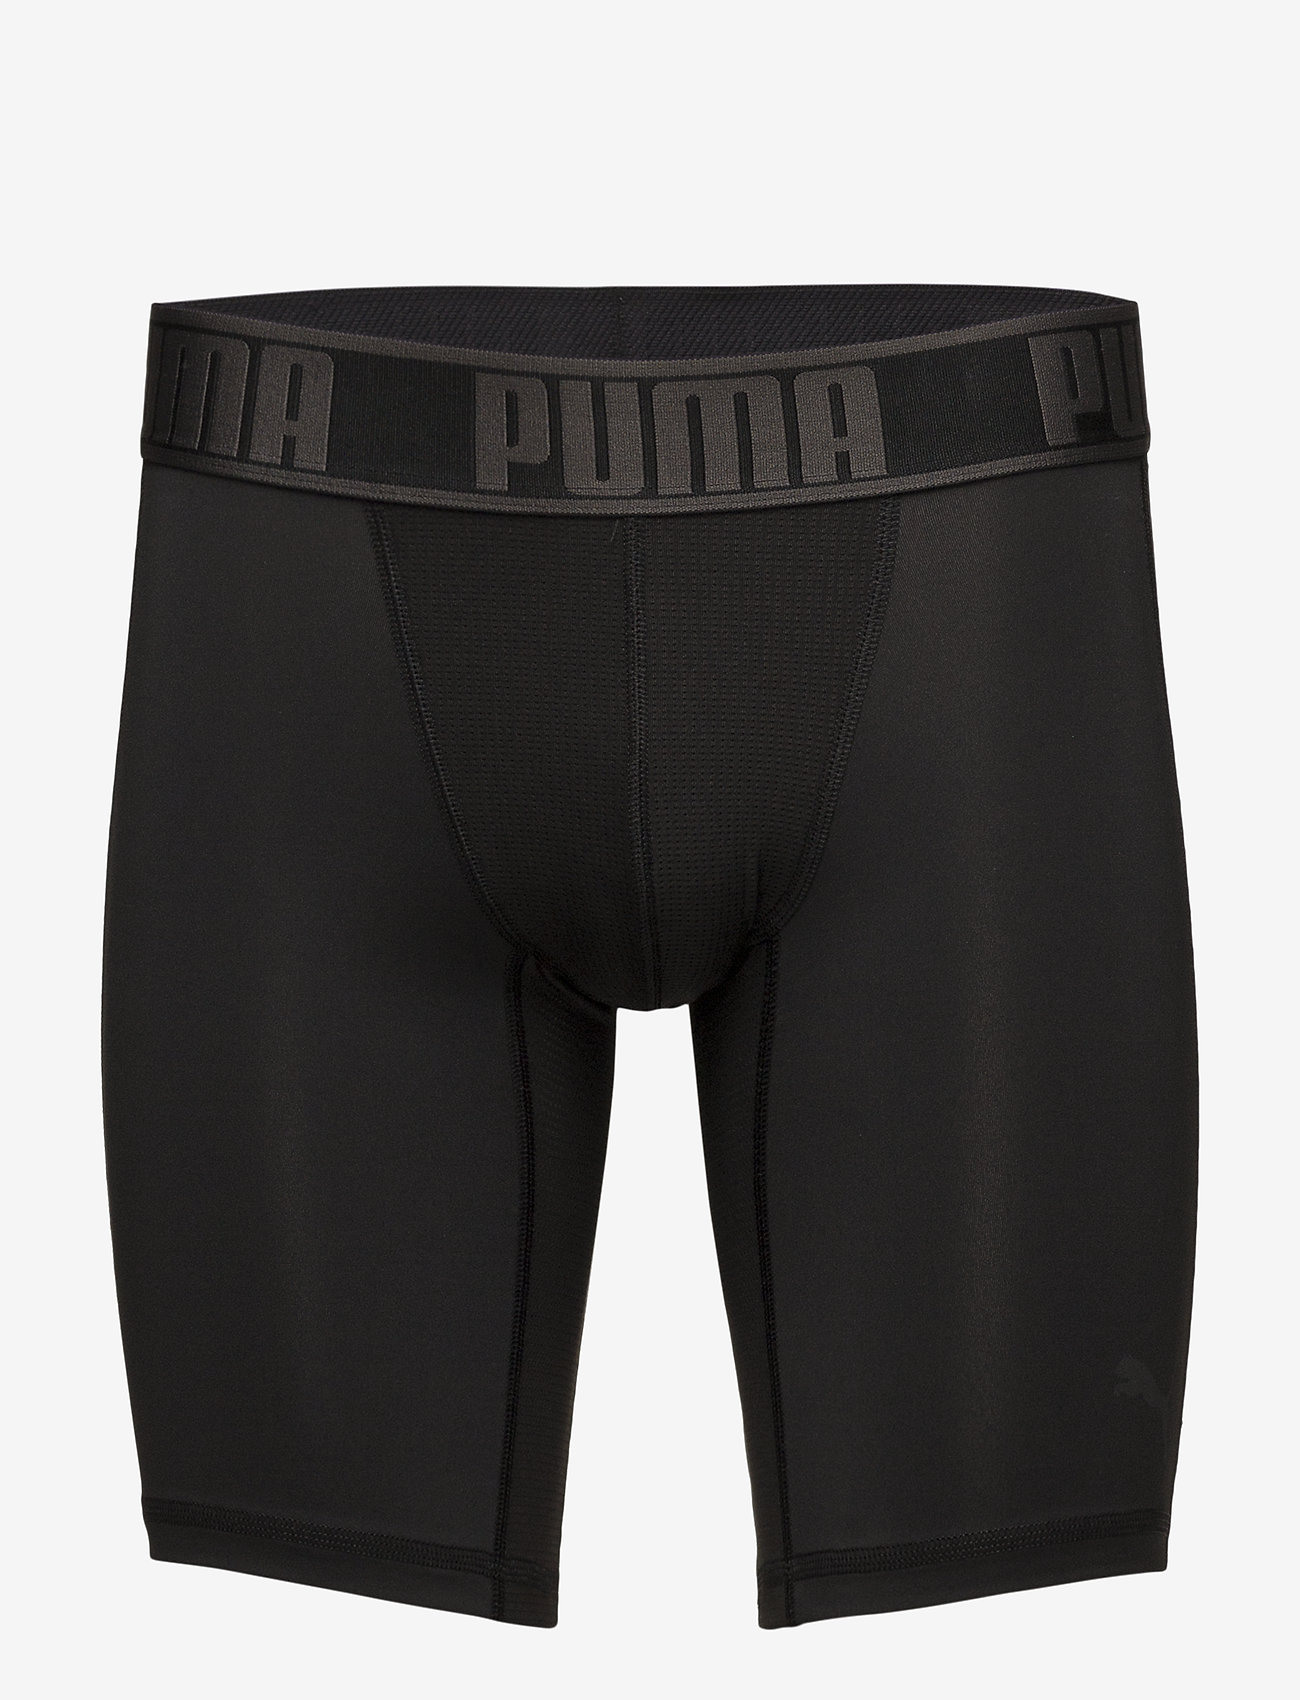 puma boxer underwear